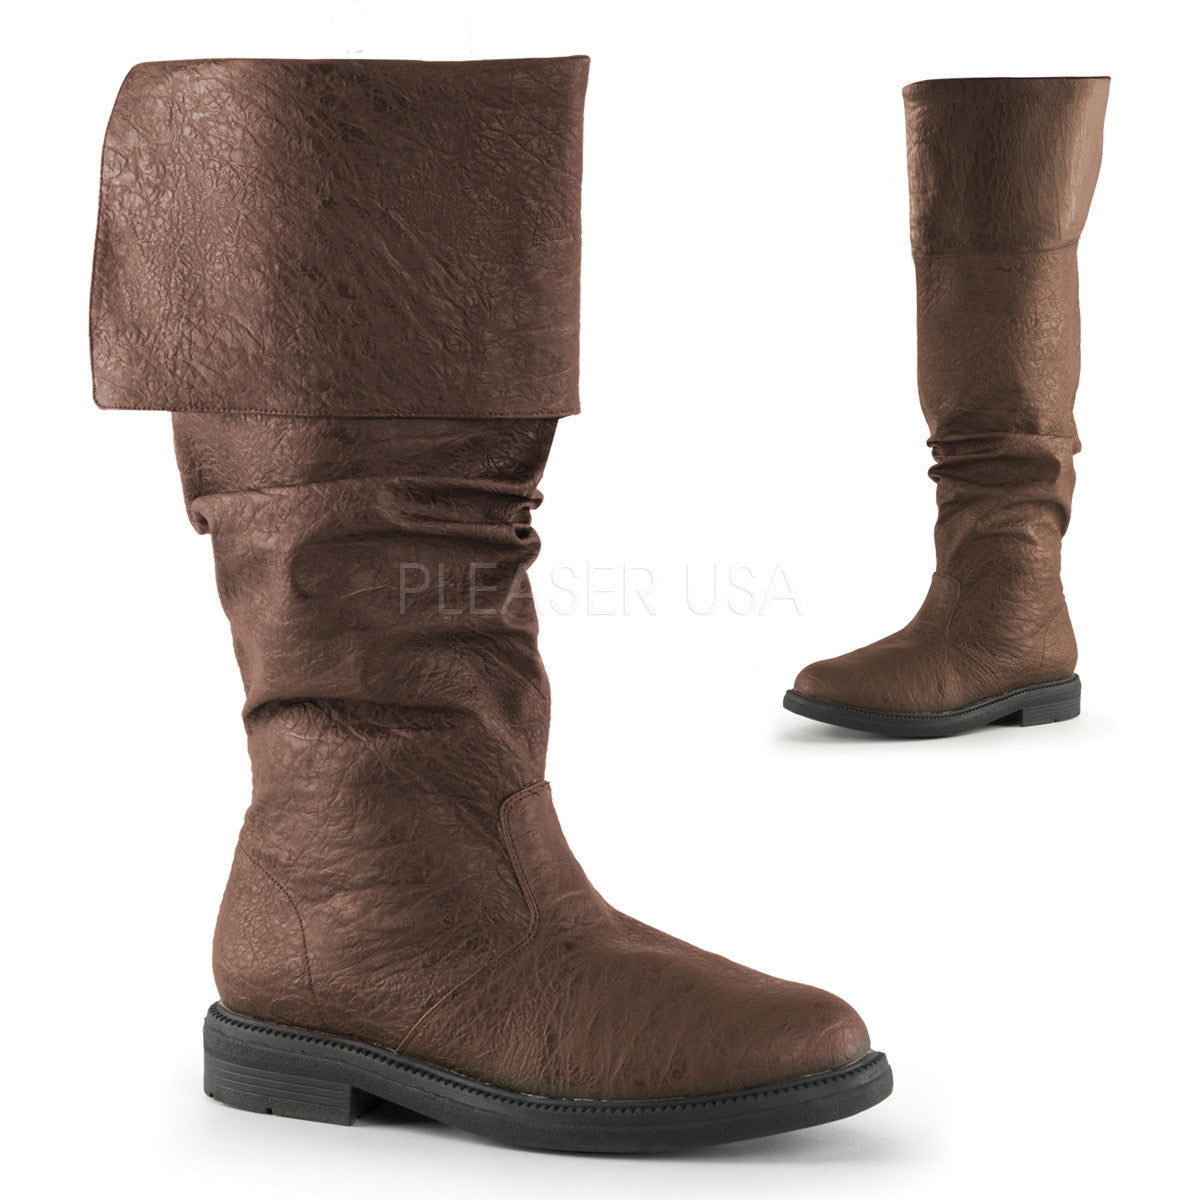 Men's Brown Renaissance Medieval Pirate Boots - Shoecup.com